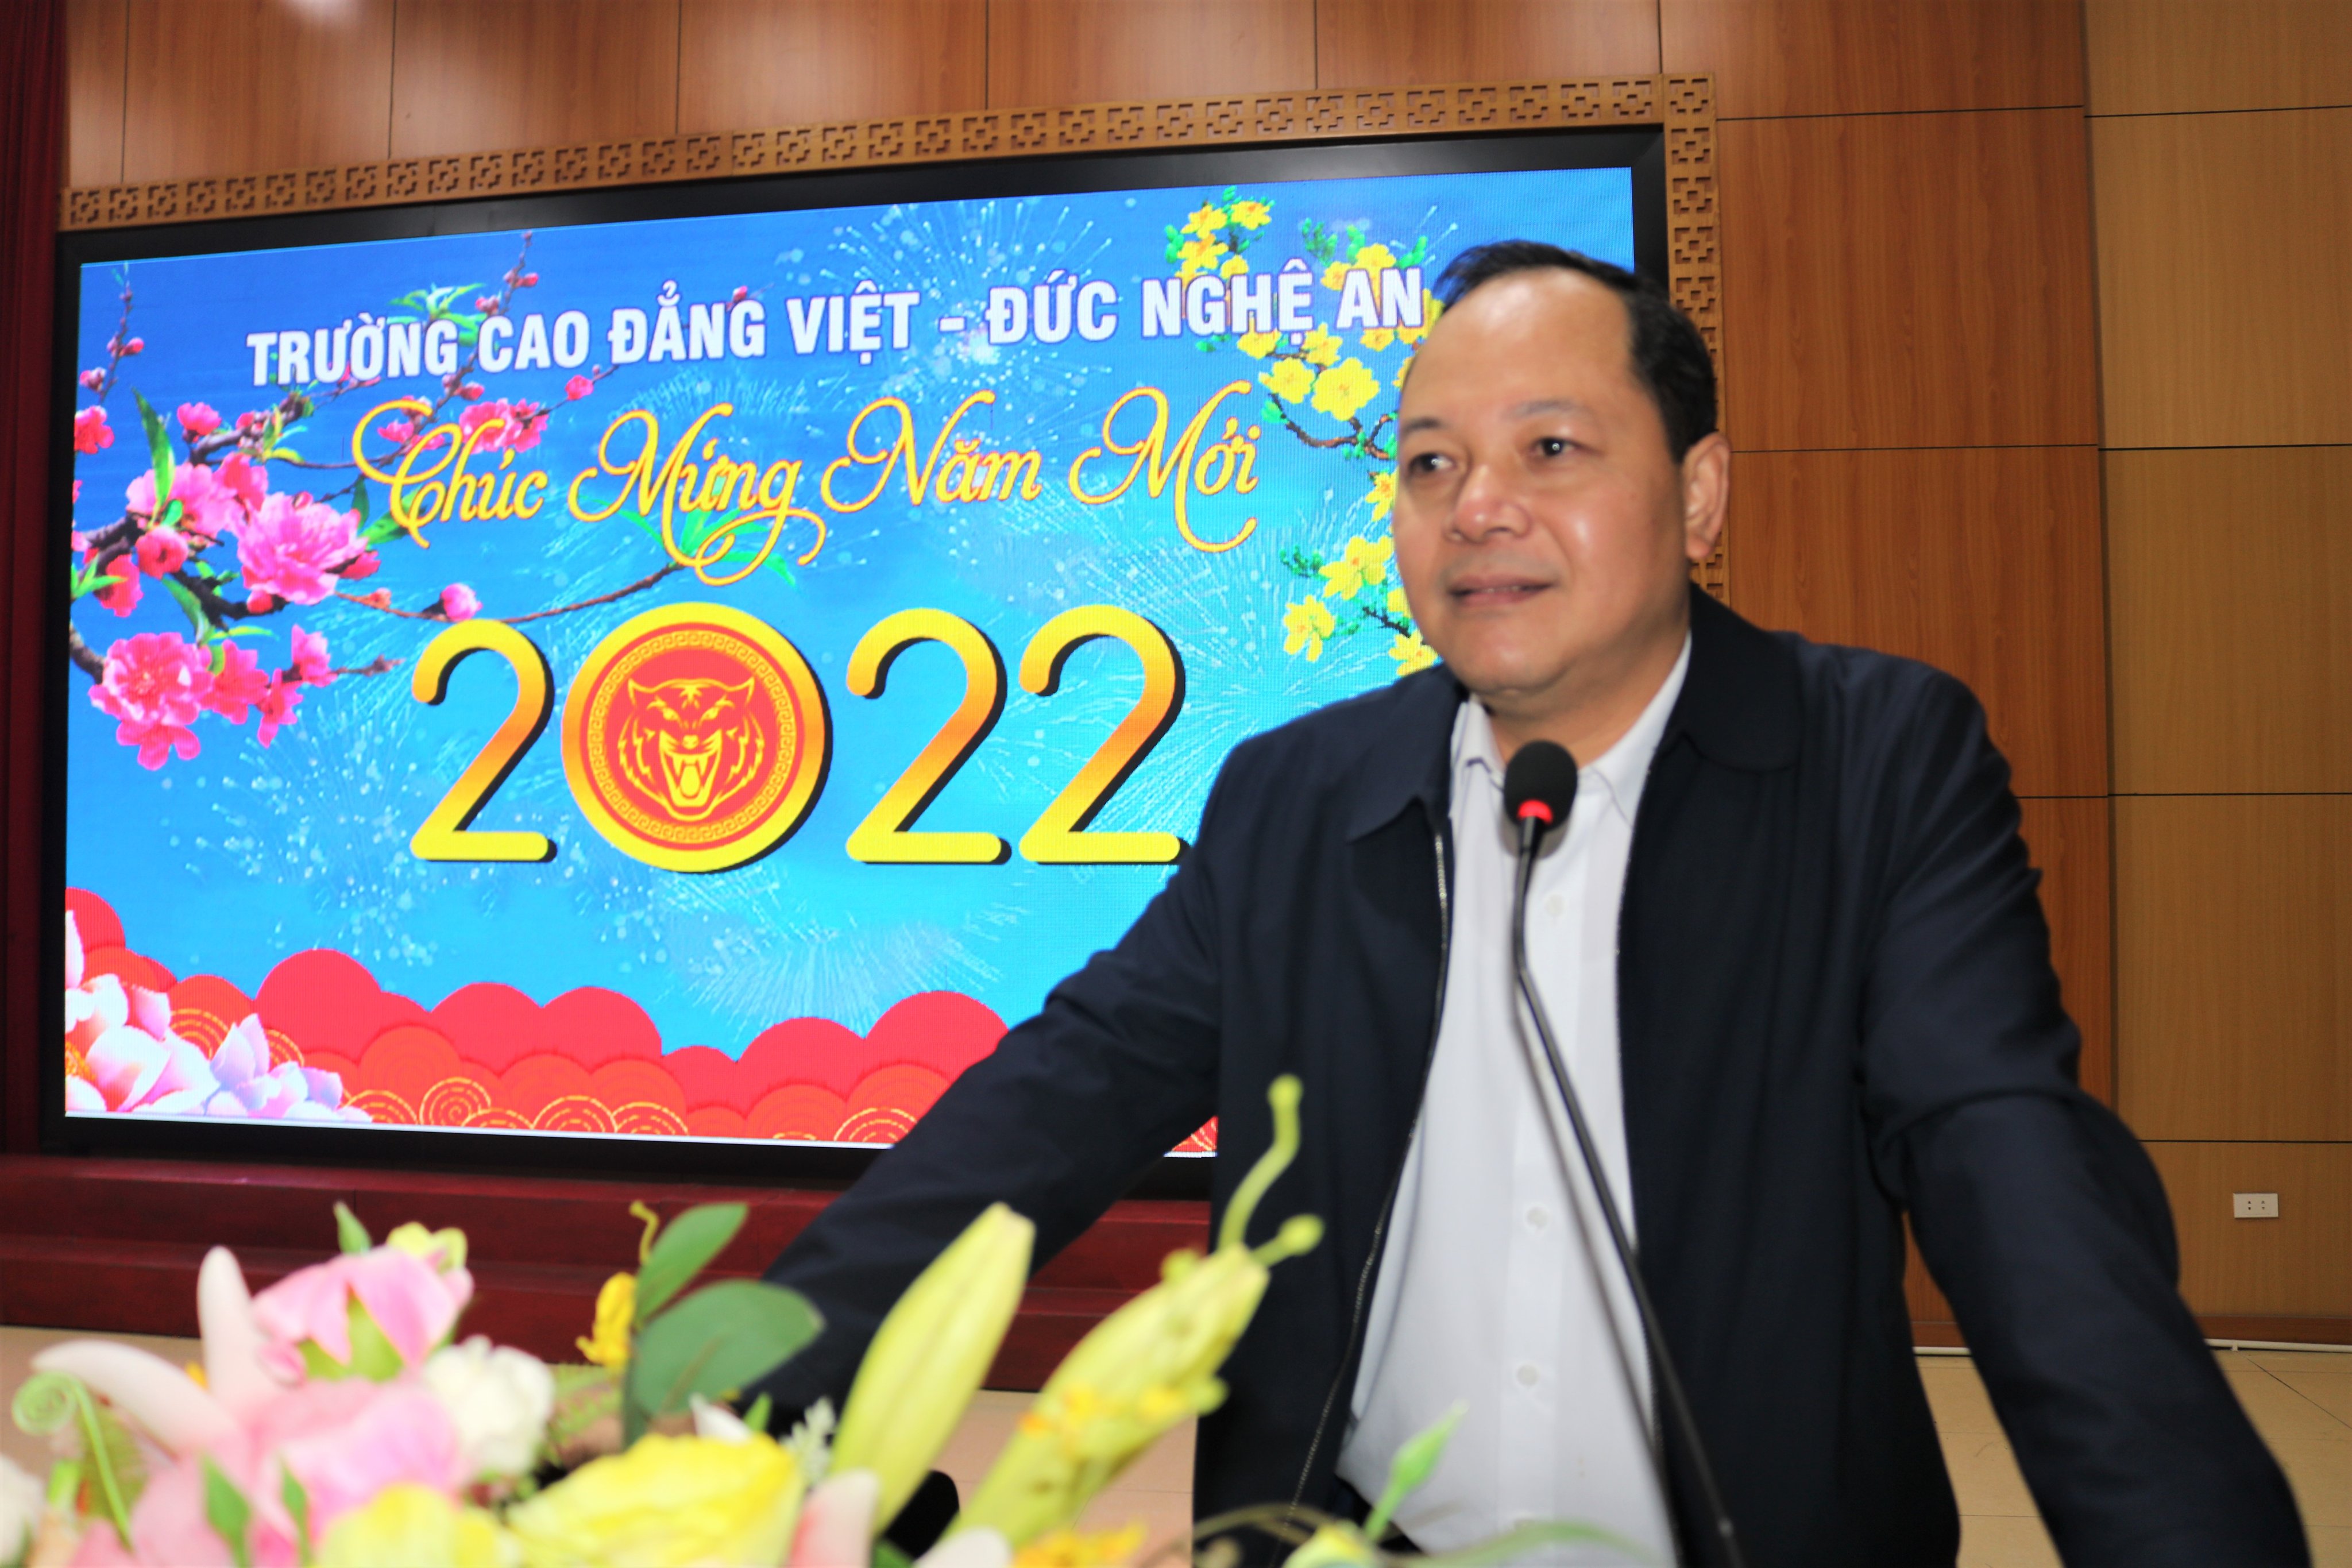 Trường Cao đẳng Việt – Đức Nghệ An tổ chức sinh hoạt tập trung cho học sinh, sinh viên trước khi nghỉ Tết Nguyên đán ​​​​​​​